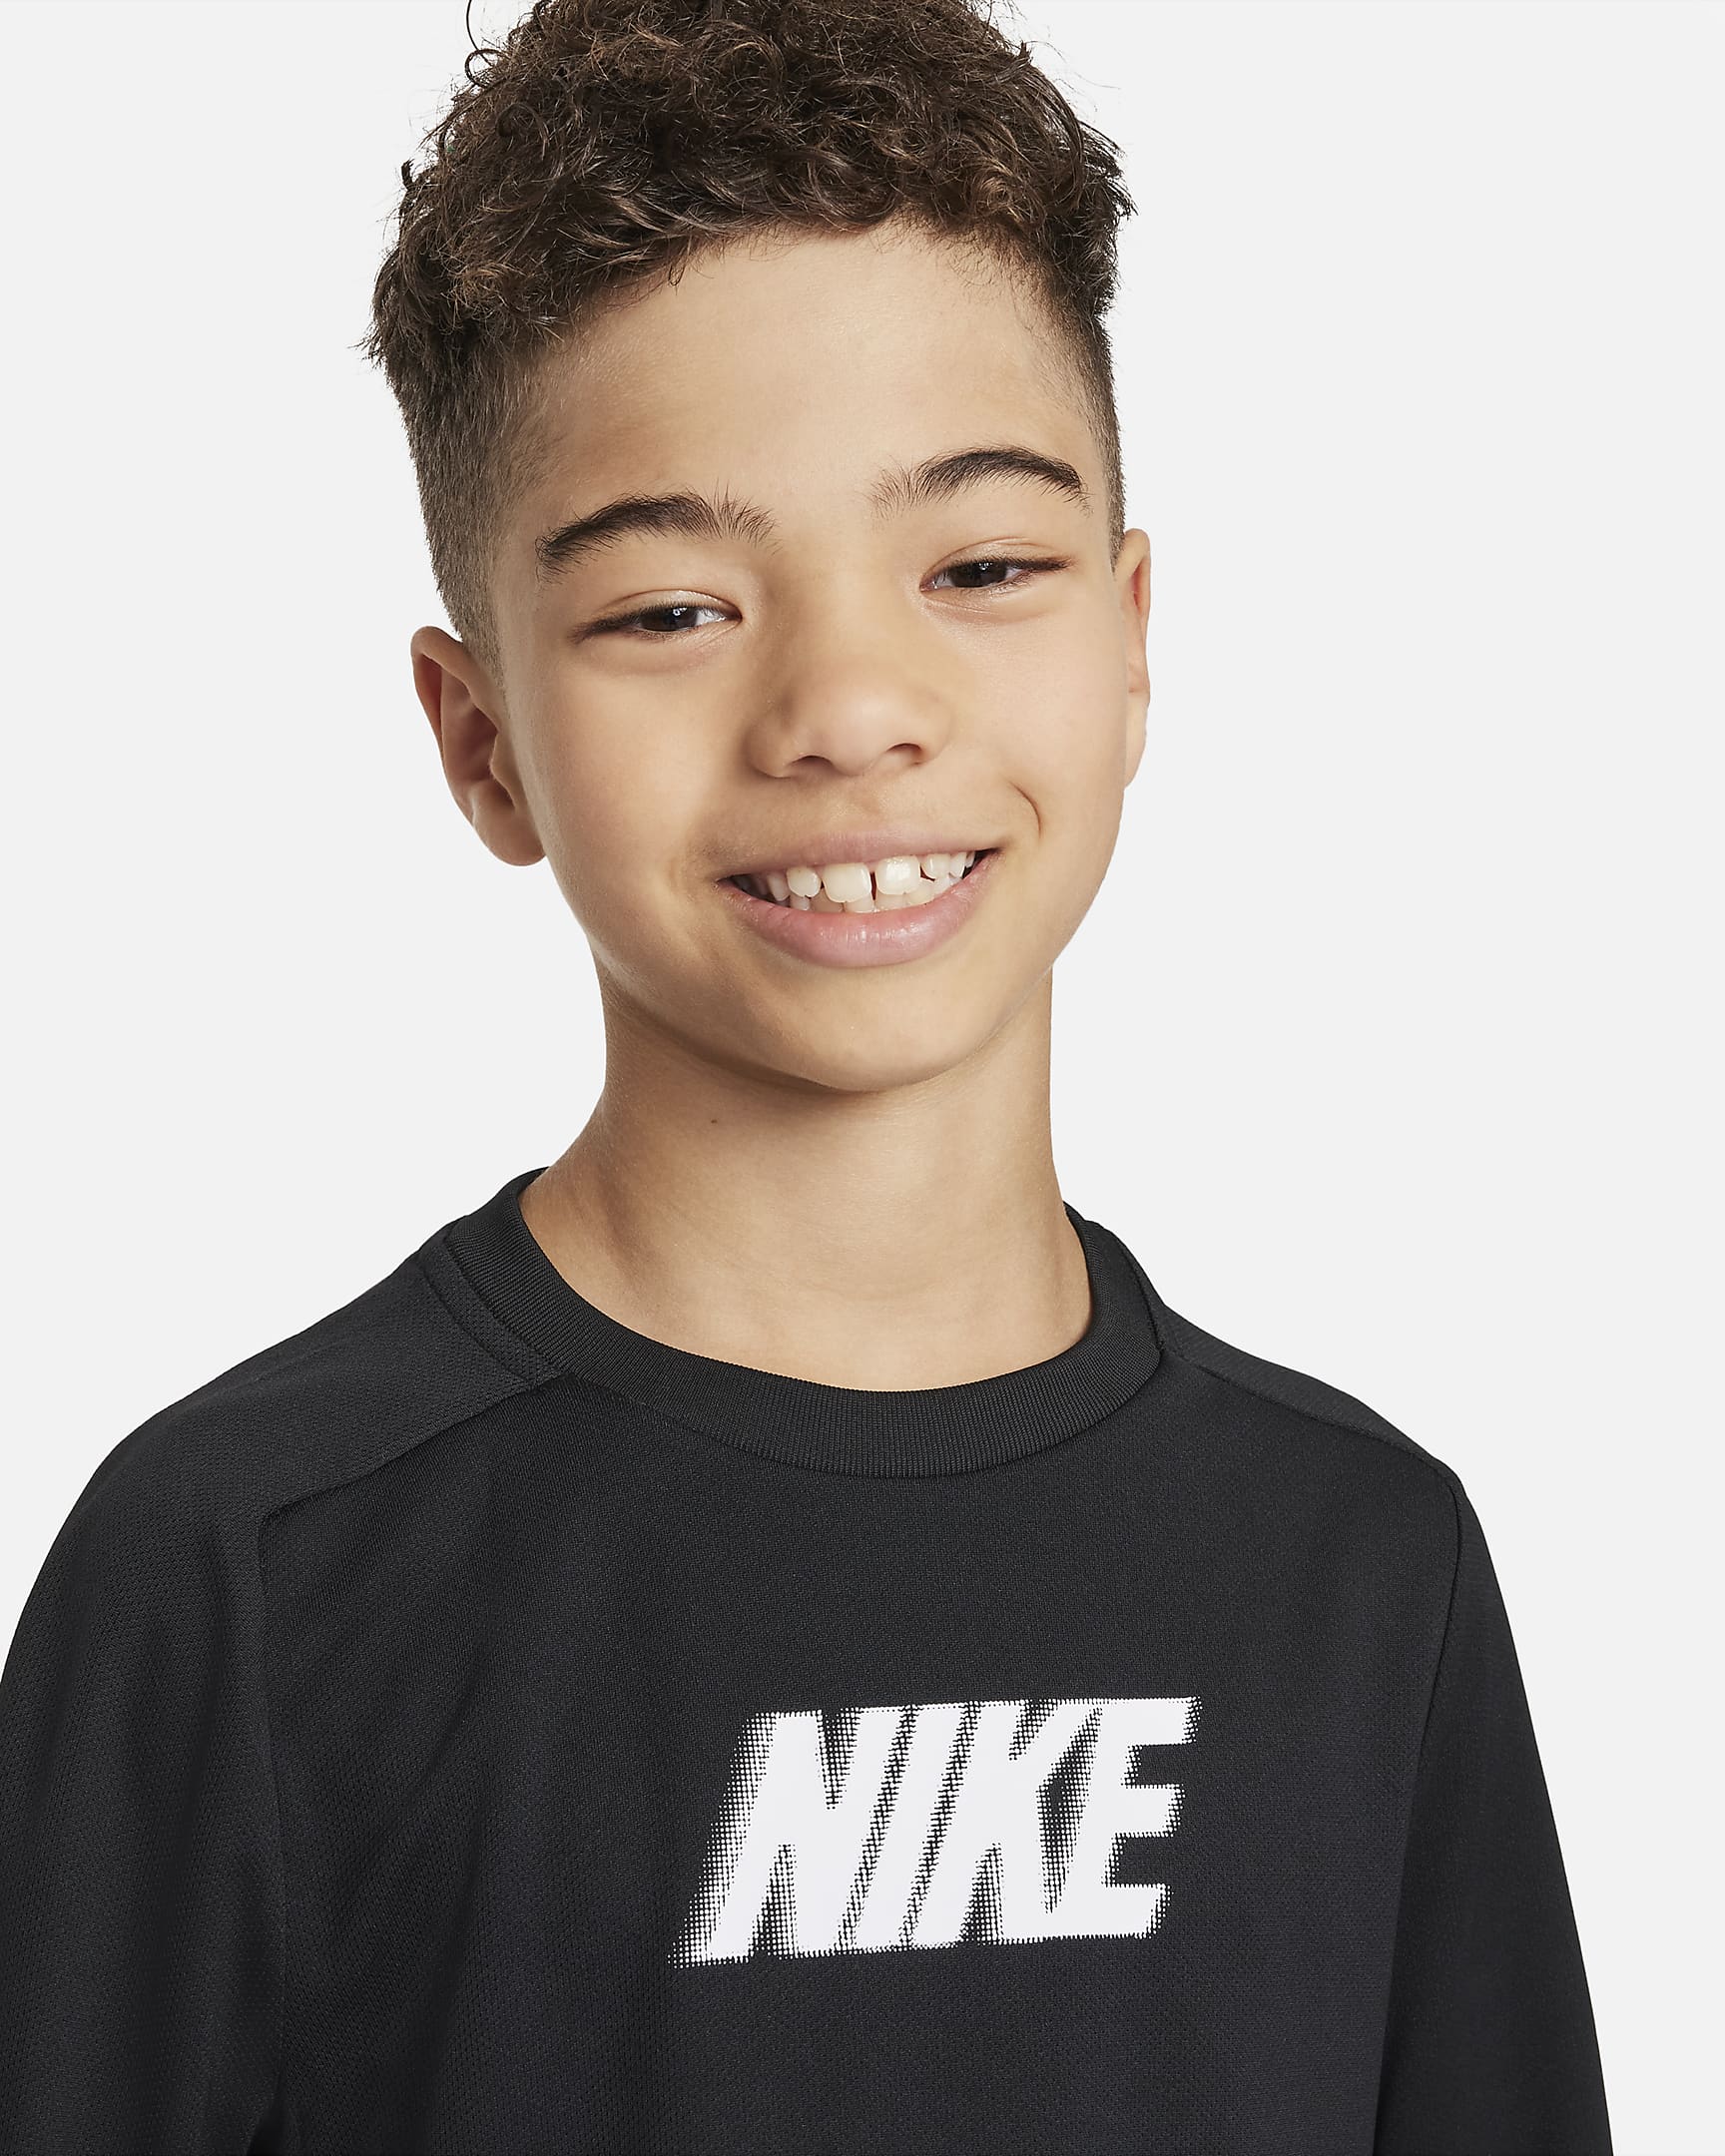 Nike Dri-FIT Multi+ Older Kids' (Boys') Long-Sleeve Top. Nike IN